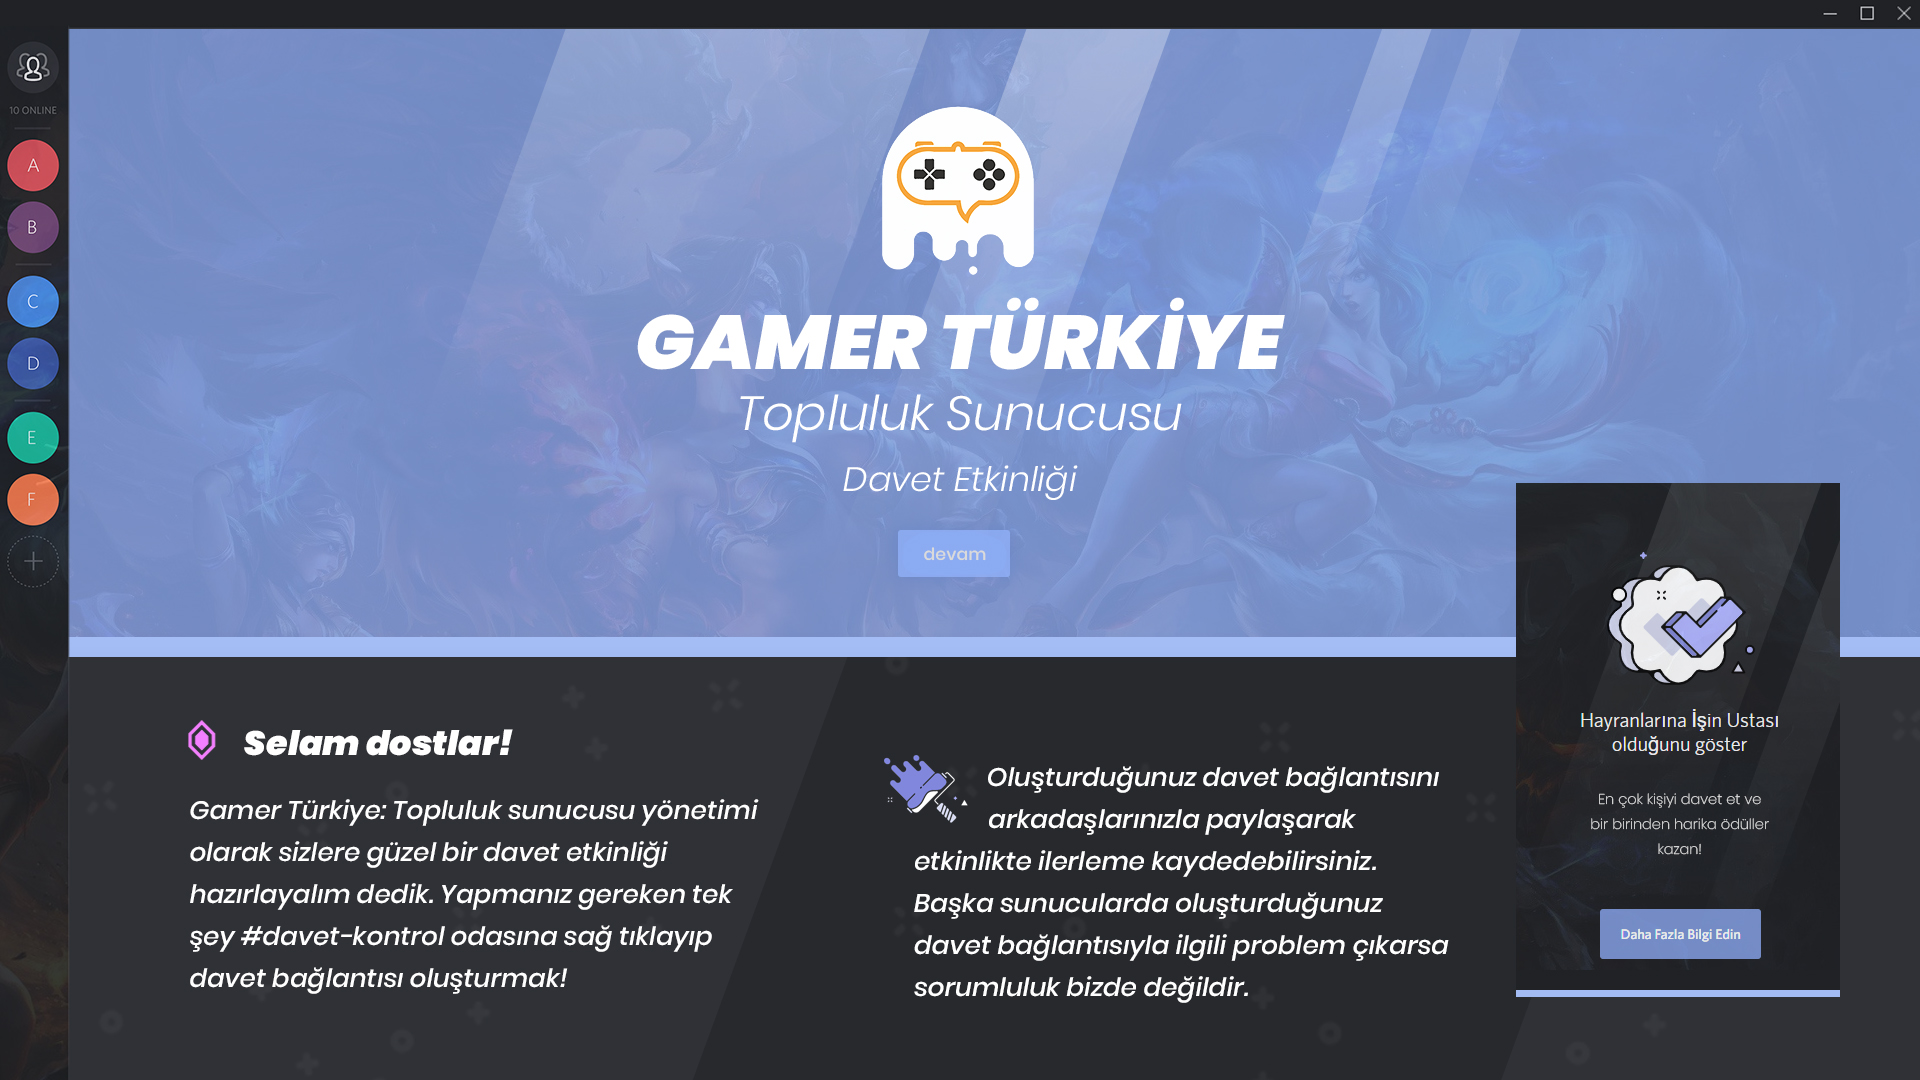 gamer_turkiye_topluluk_sunucusu.jpg